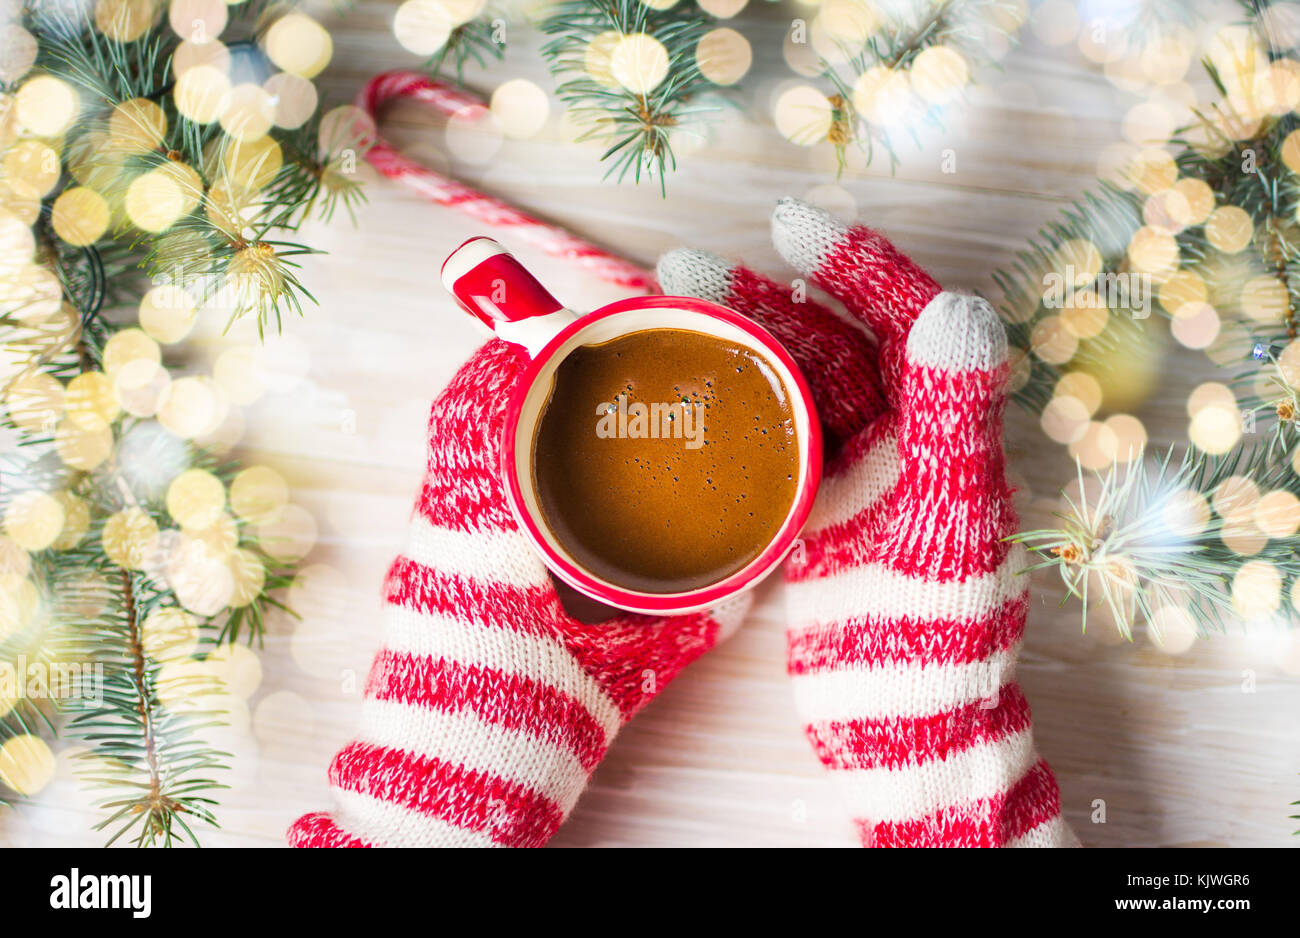 Hände im Winter Handschuhe halten einer Tasse Kaffee first person Ansicht Stockfoto